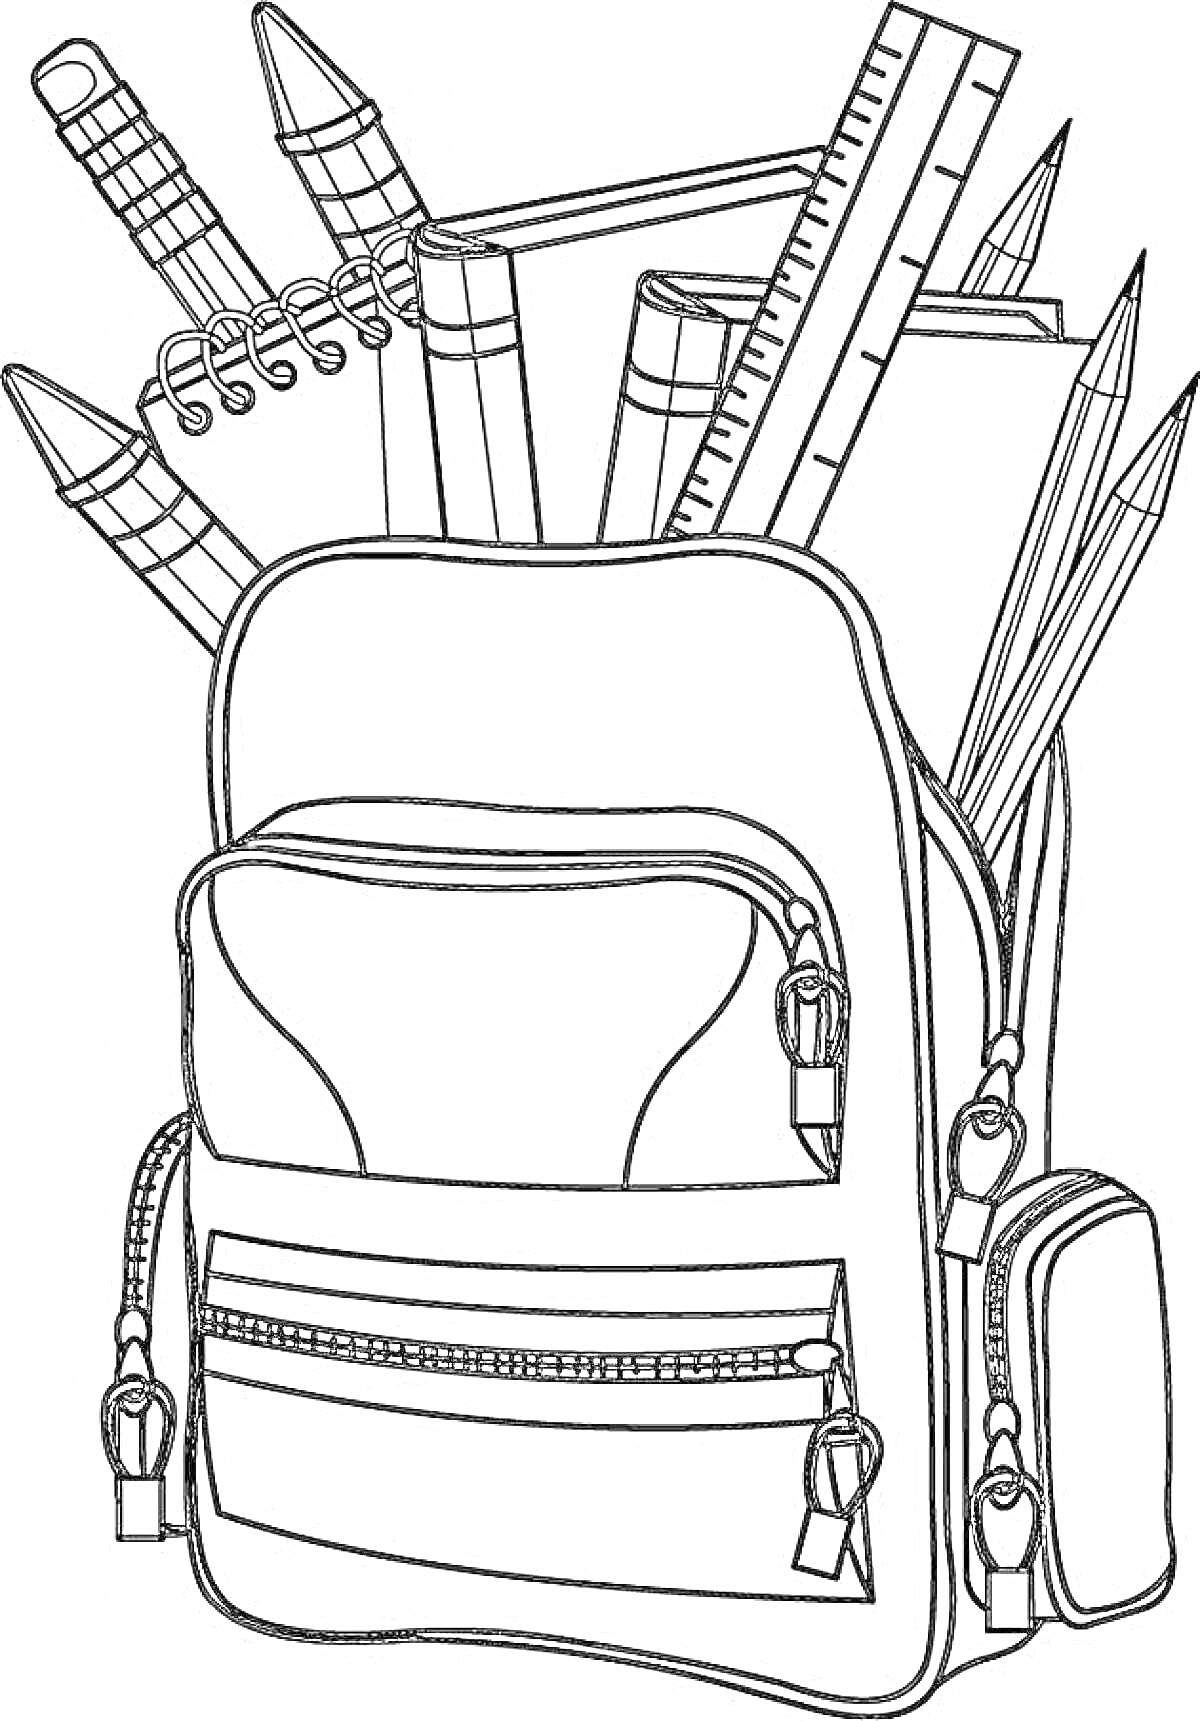 На раскраске изображено: Школьный рюкзак, Карандаши, Блокнот, Школьные принадлежности, Школьная сумка, Рюкзак, Учеба, Школа, Канцелярия